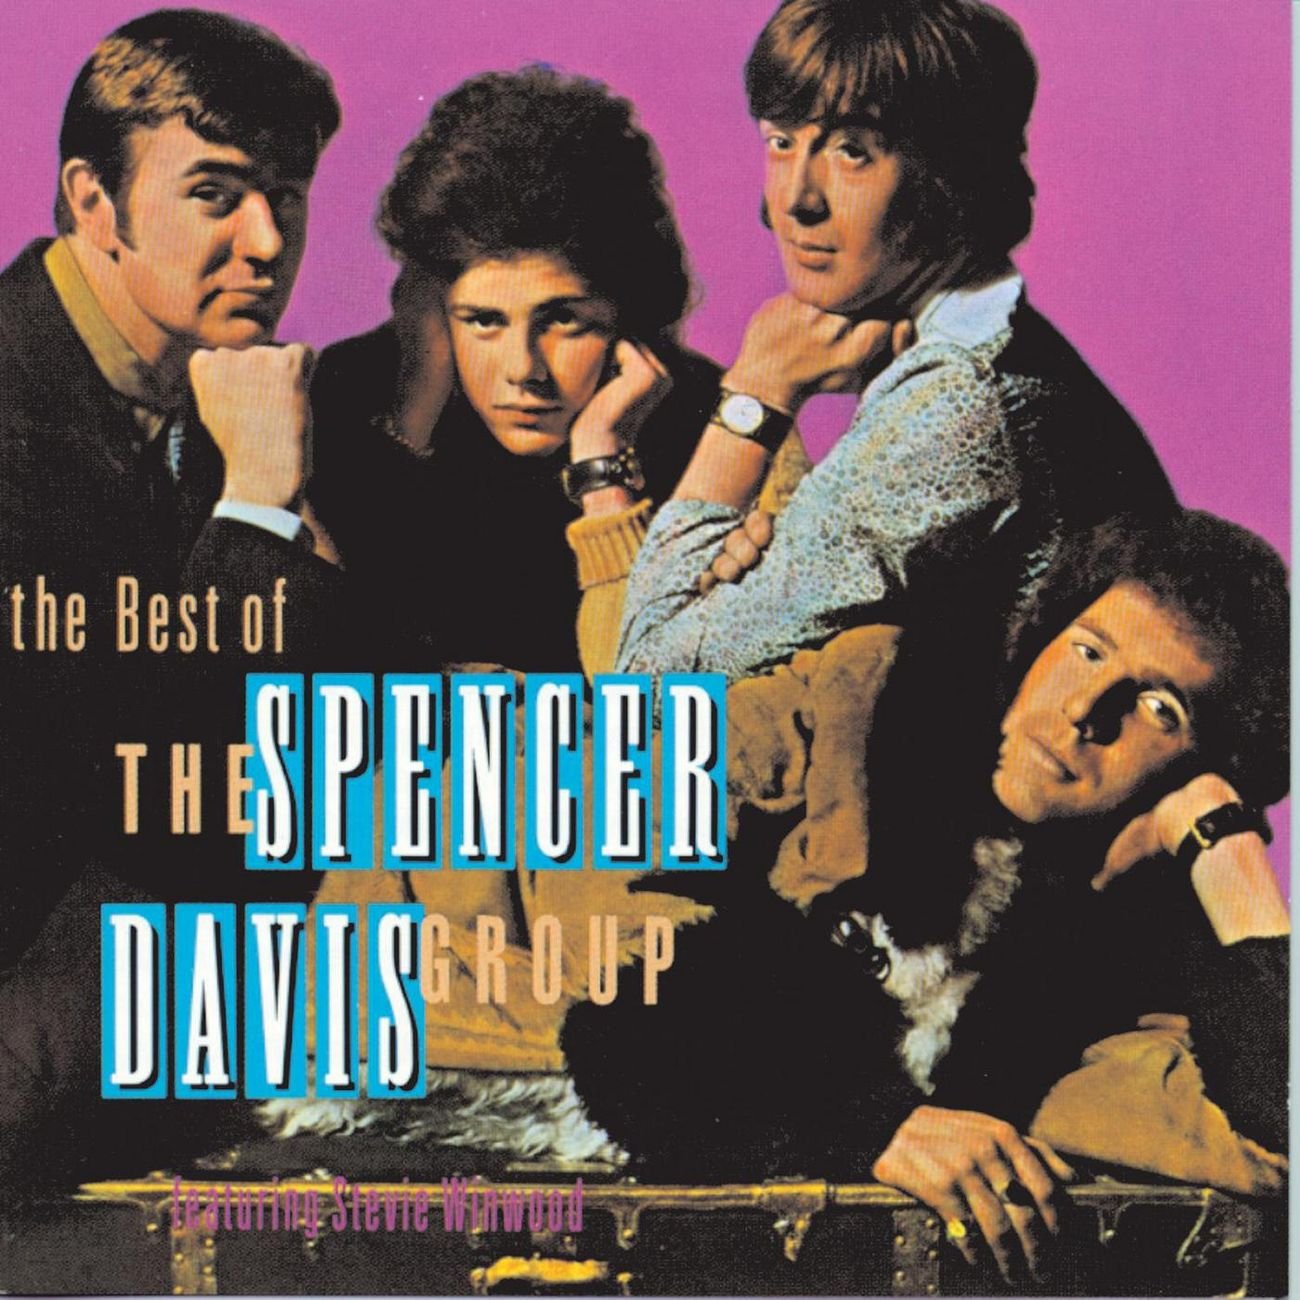 Spenser Davis Group 86